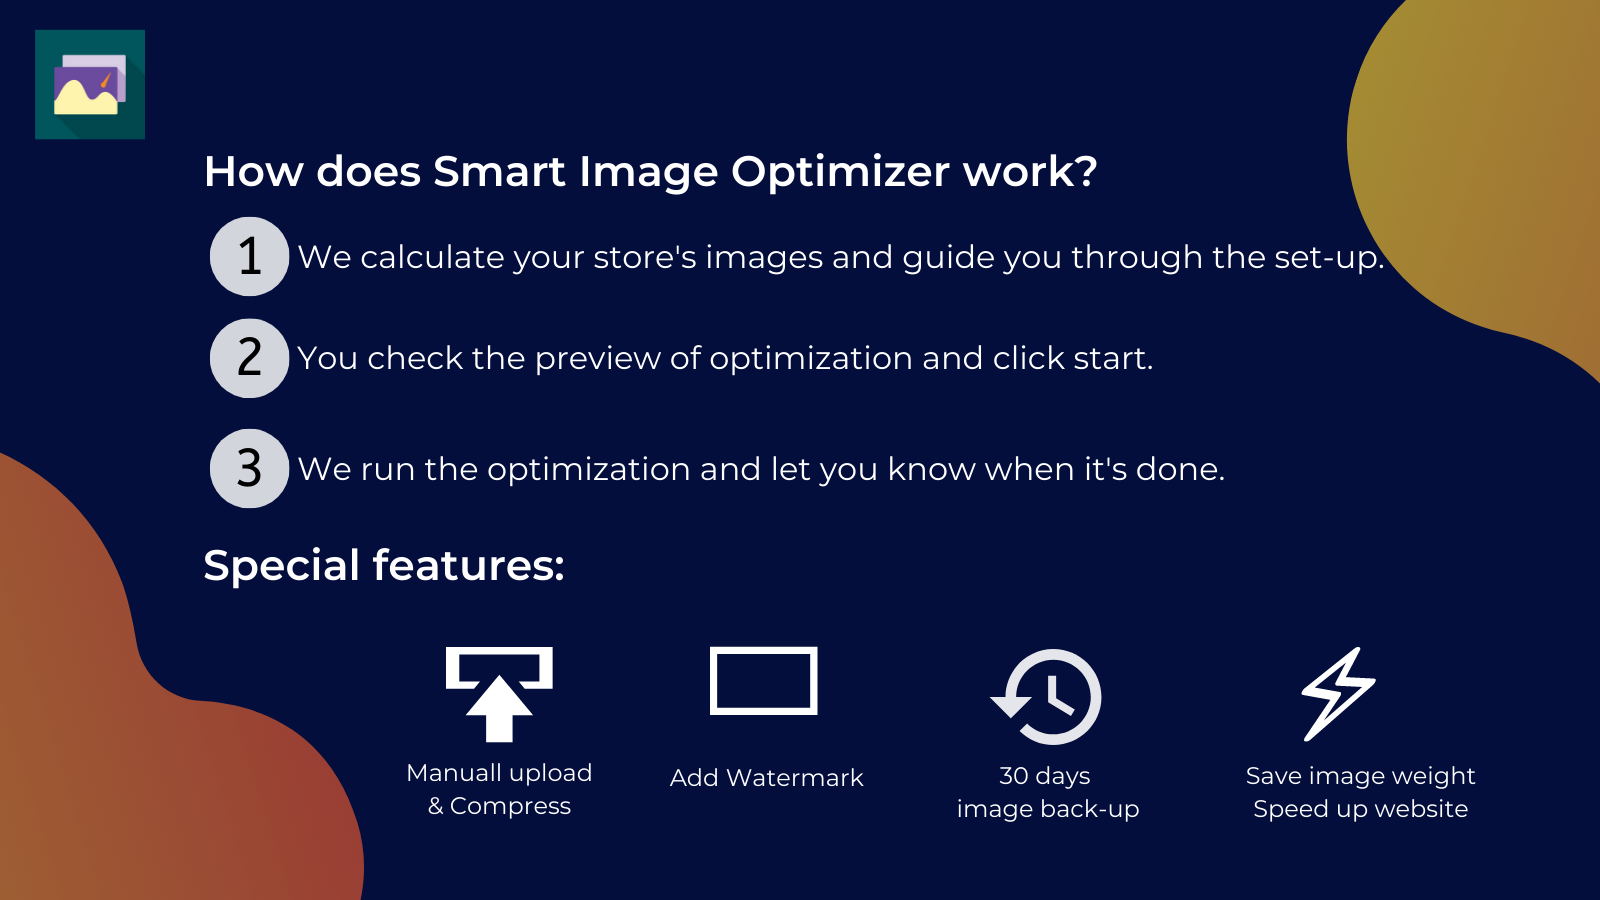 Hoe werkt Smart Image Optimizer?